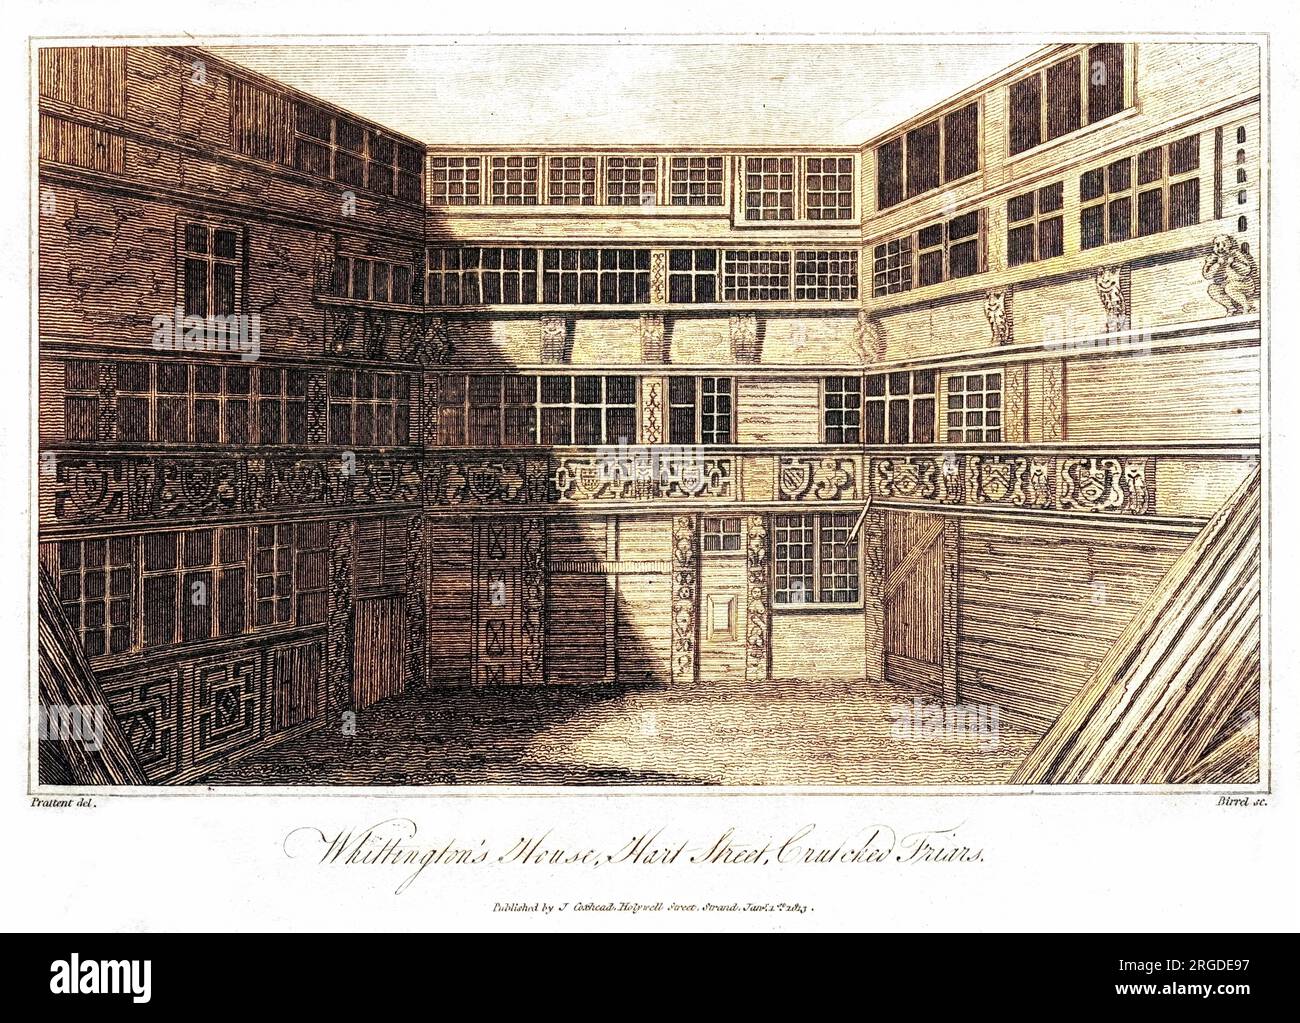 WHITTINGTON HOUSE, Hart Street, Crutched Friars, Londres - la maison réputée de Richard Whittington, maire de Londres, et de son chat. Banque D'Images